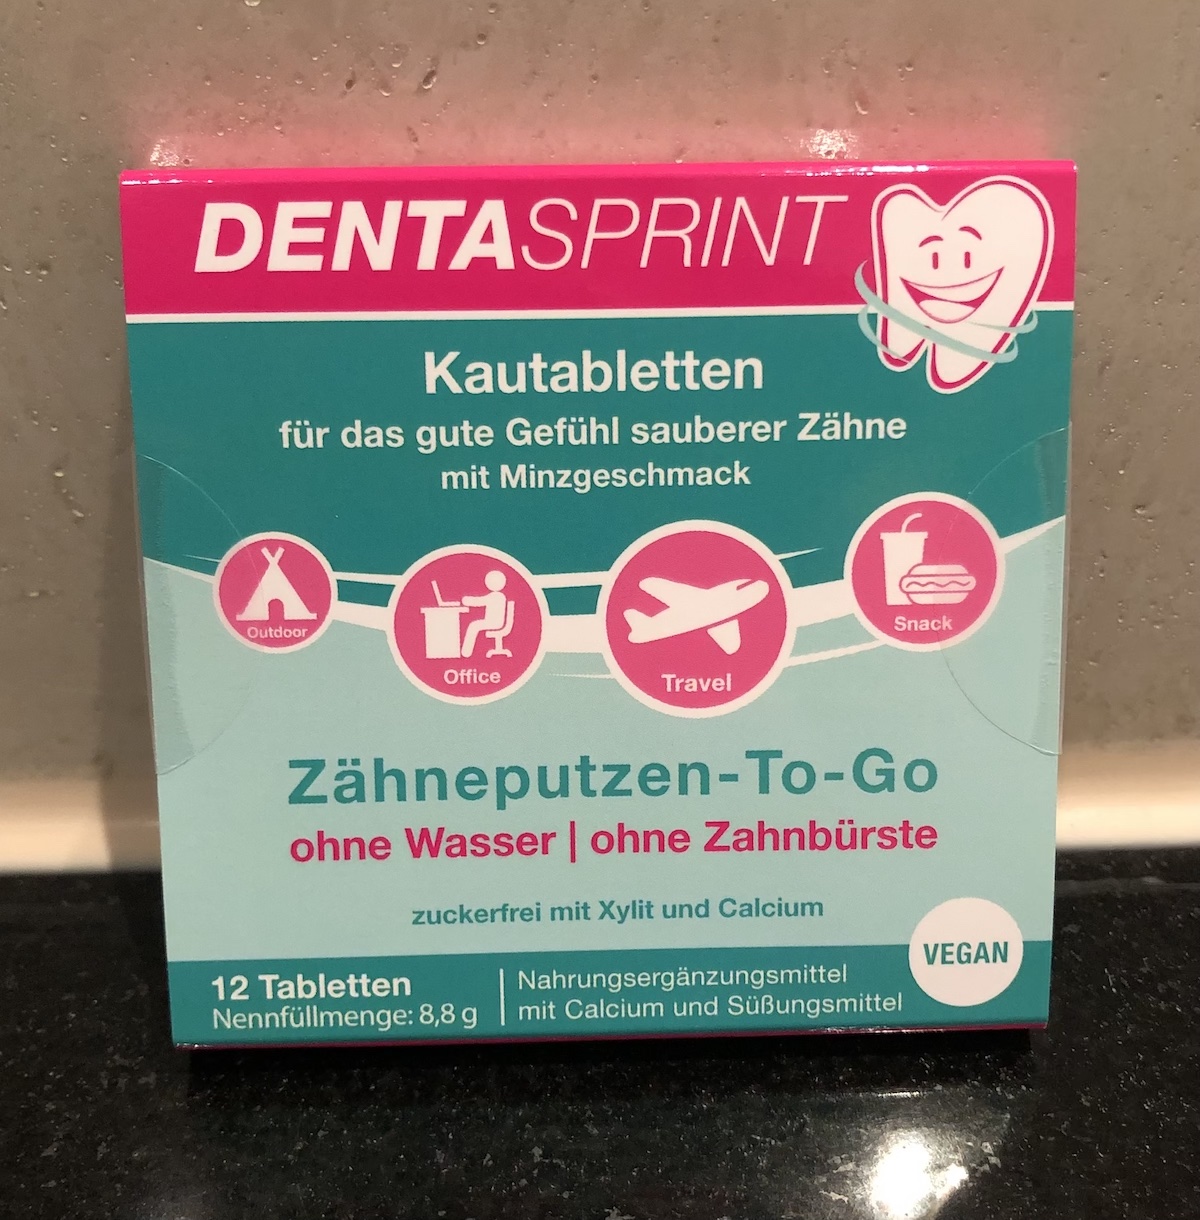 Dentasprint Zahnpflege Kautabletten - Verpackungsfront